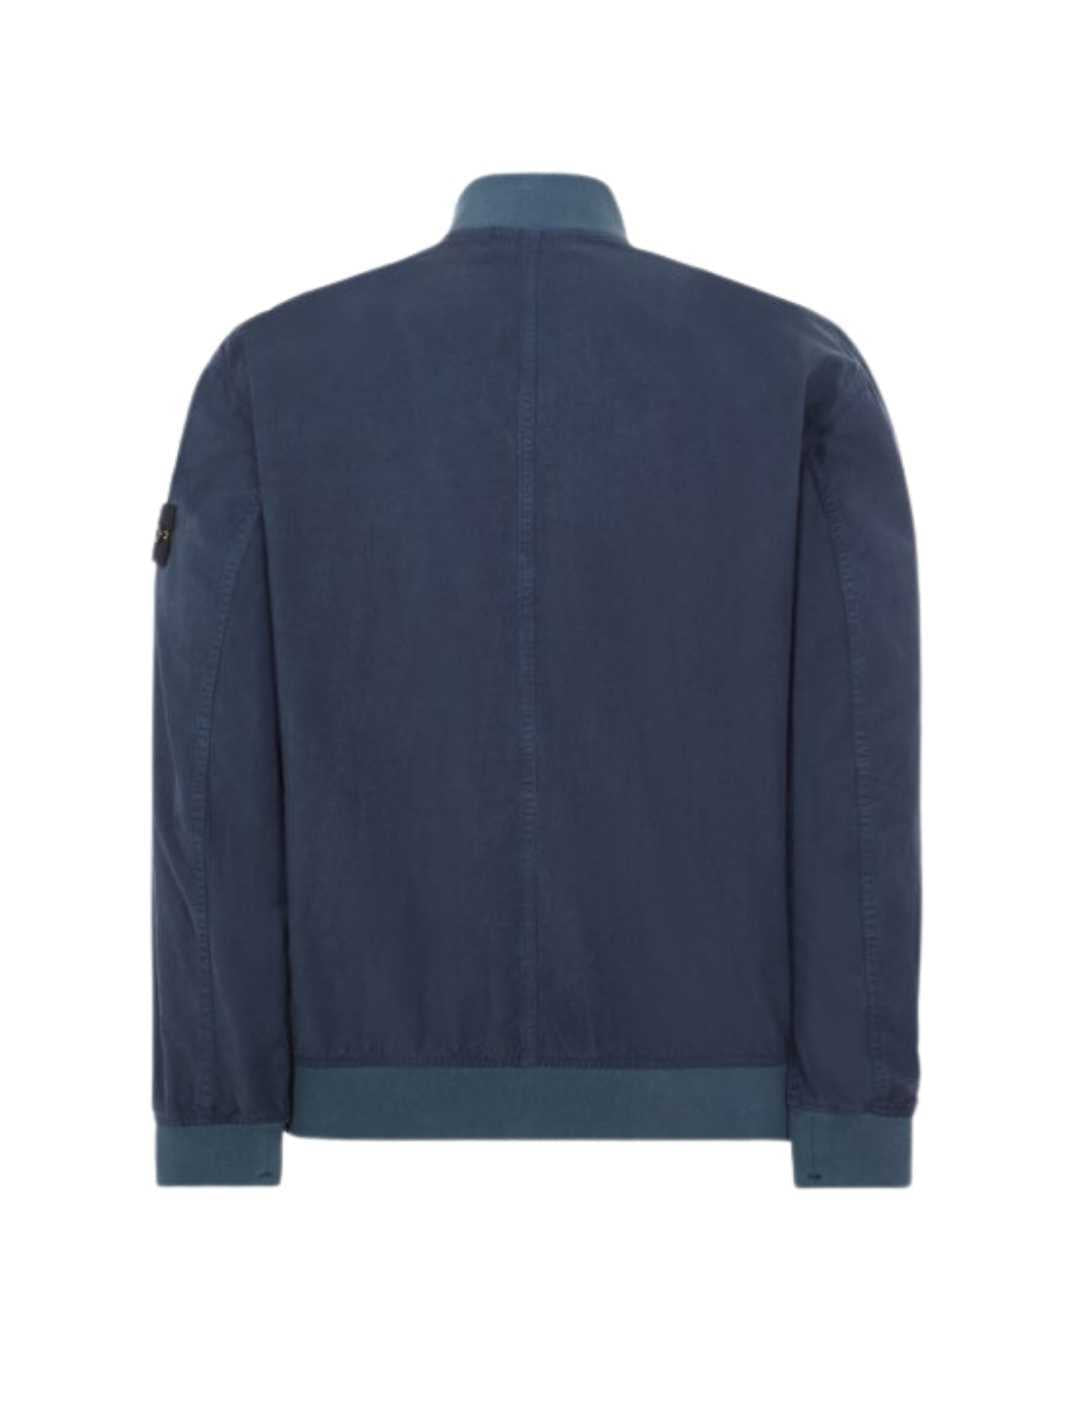 Stone Island Outerwear Jakke | Giubbotto Jacket Petrol Blue